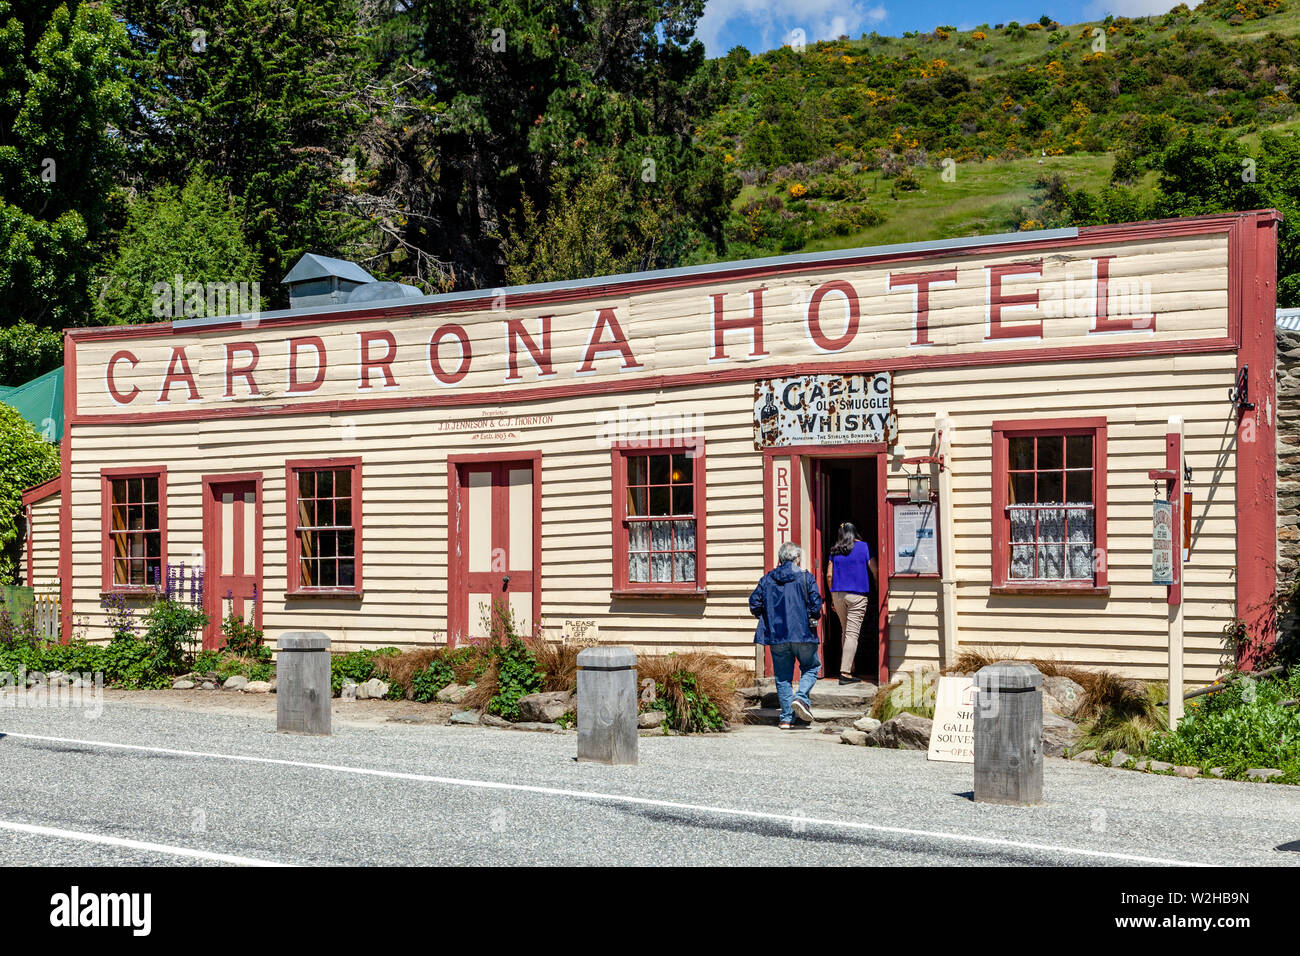 L'emblématique Cardrona Hotel dans le village de Cardrona, (près de Wanaka), Île du Sud, Nouvelle-Zélande Banque D'Images